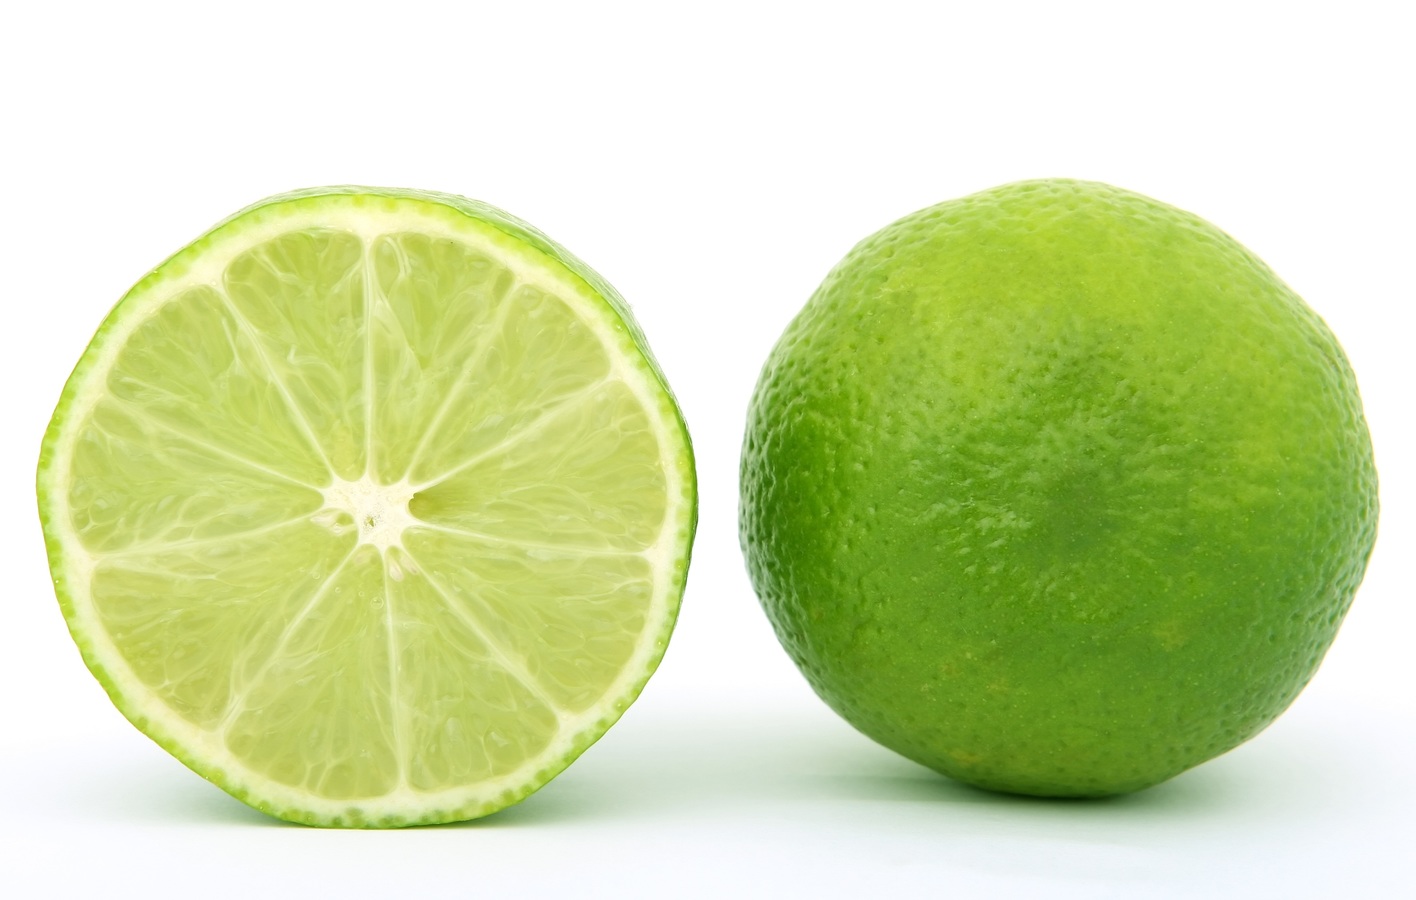 Gitana Perla te enseña a protegerte de las malas energías con limones